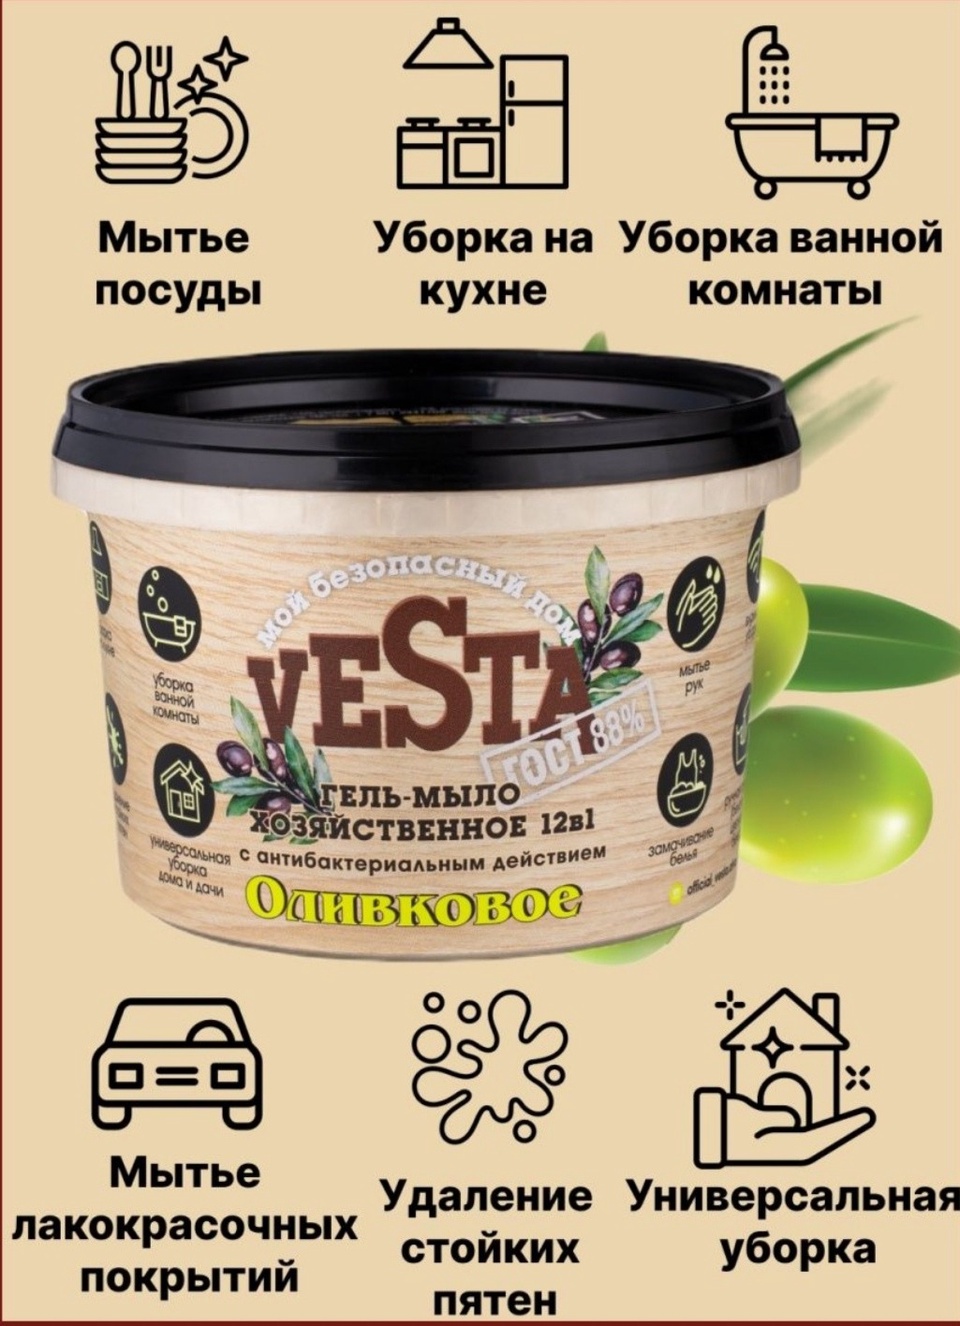 Vesta гель-мыло хозяйственное - 165 ₽, заказать онлайн.